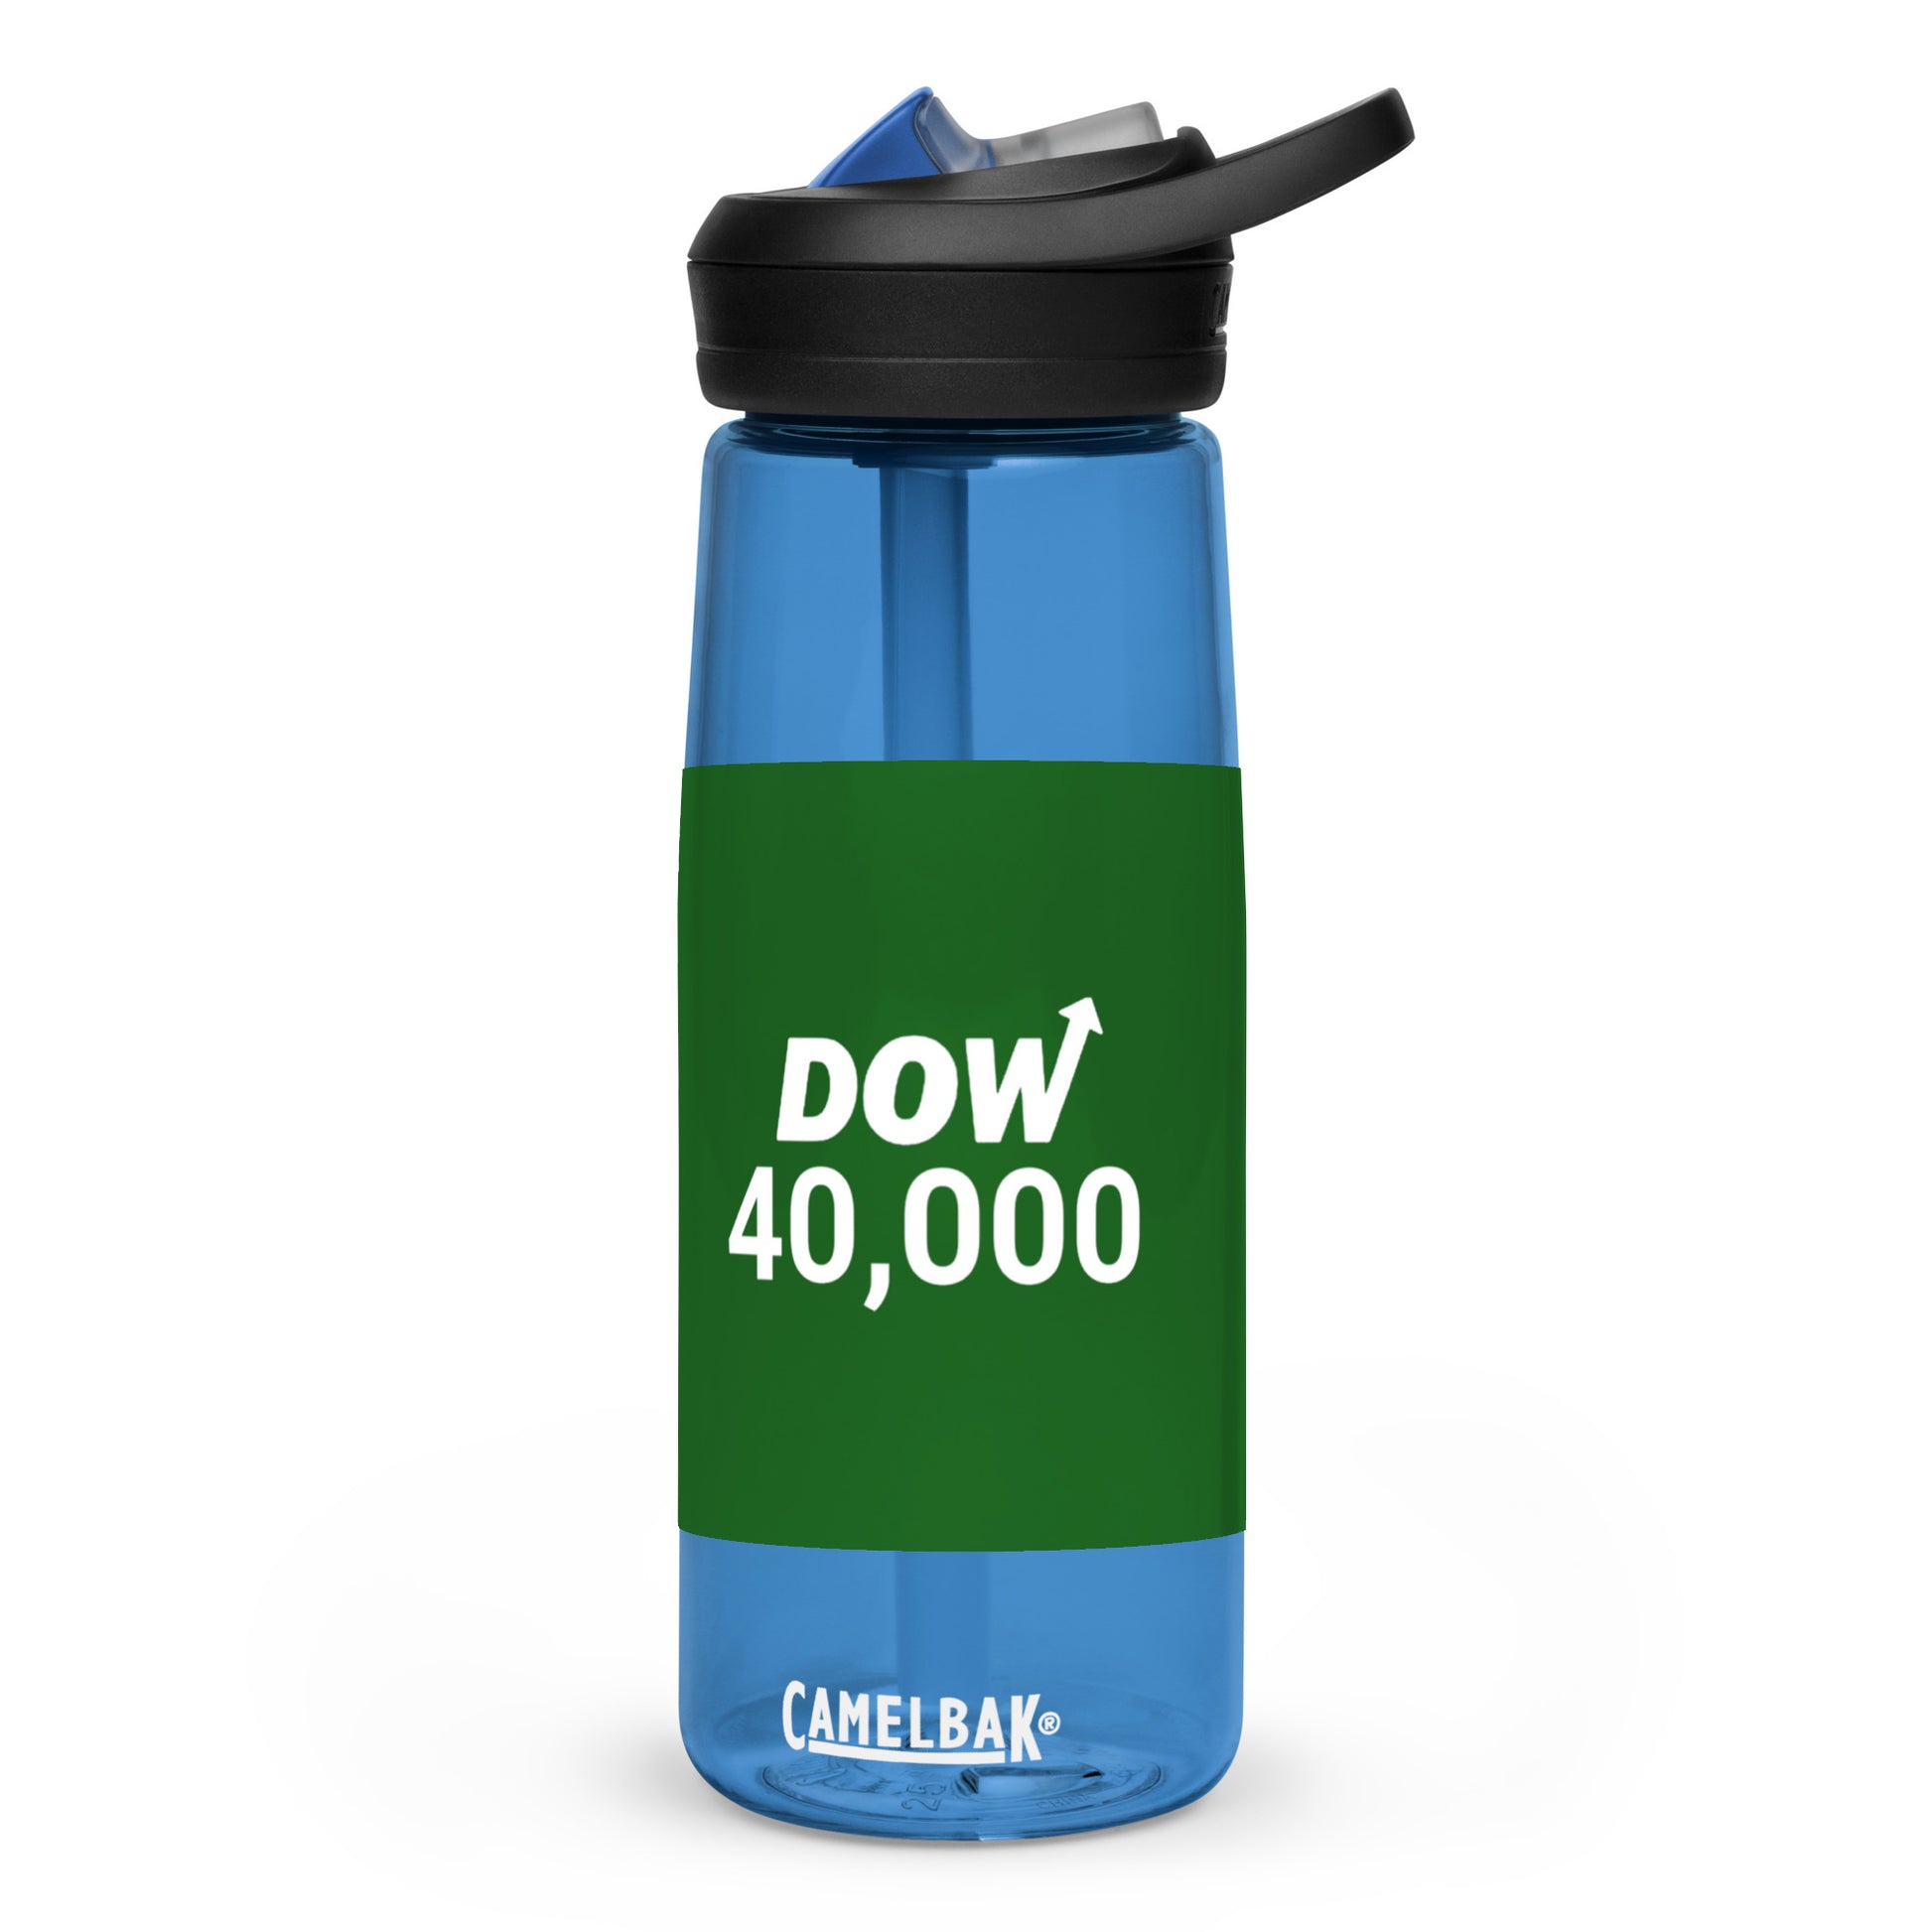 Dow 40.000 Sports water bottle / Dow 40k Sports water bottle